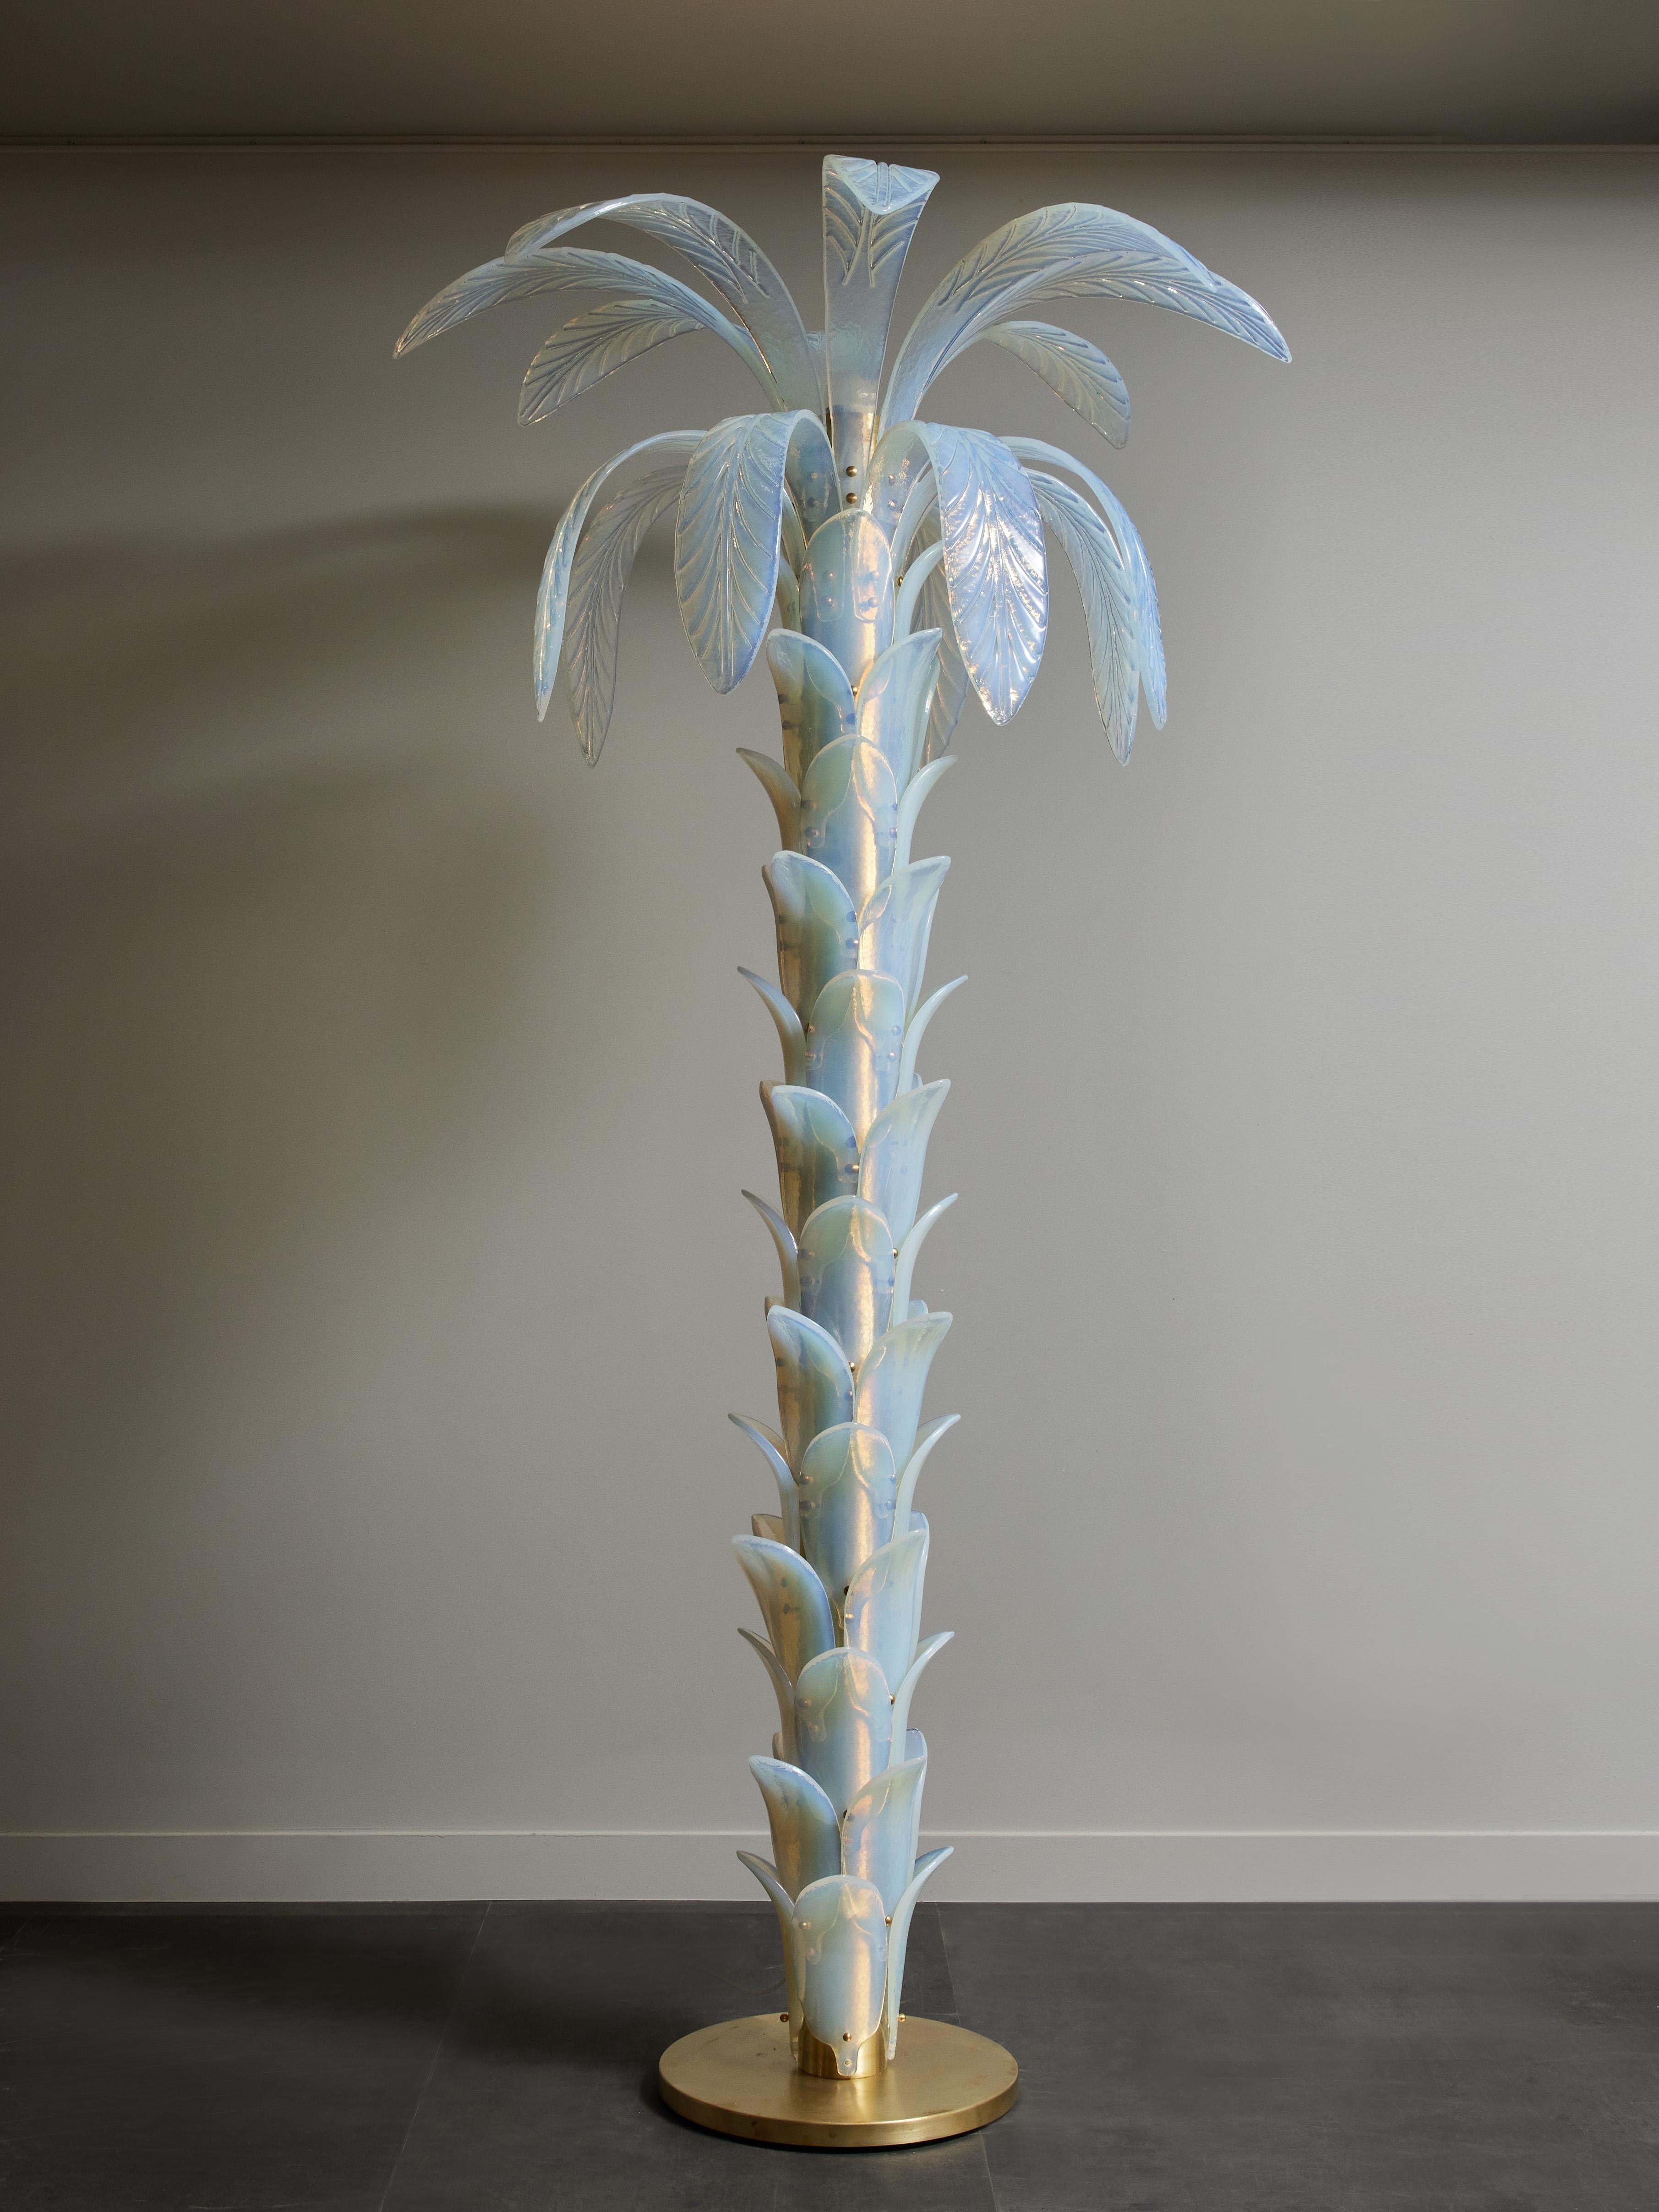 Grand lampadaire en forme de palmier, composé d'une base circulaire et d'un tronc en laiton, recouvert de feuilles en verre Murano irisé jusqu'au sommet où de grandes feuilles jaillissent du tronc.
Une source de lumière au sommet.
 